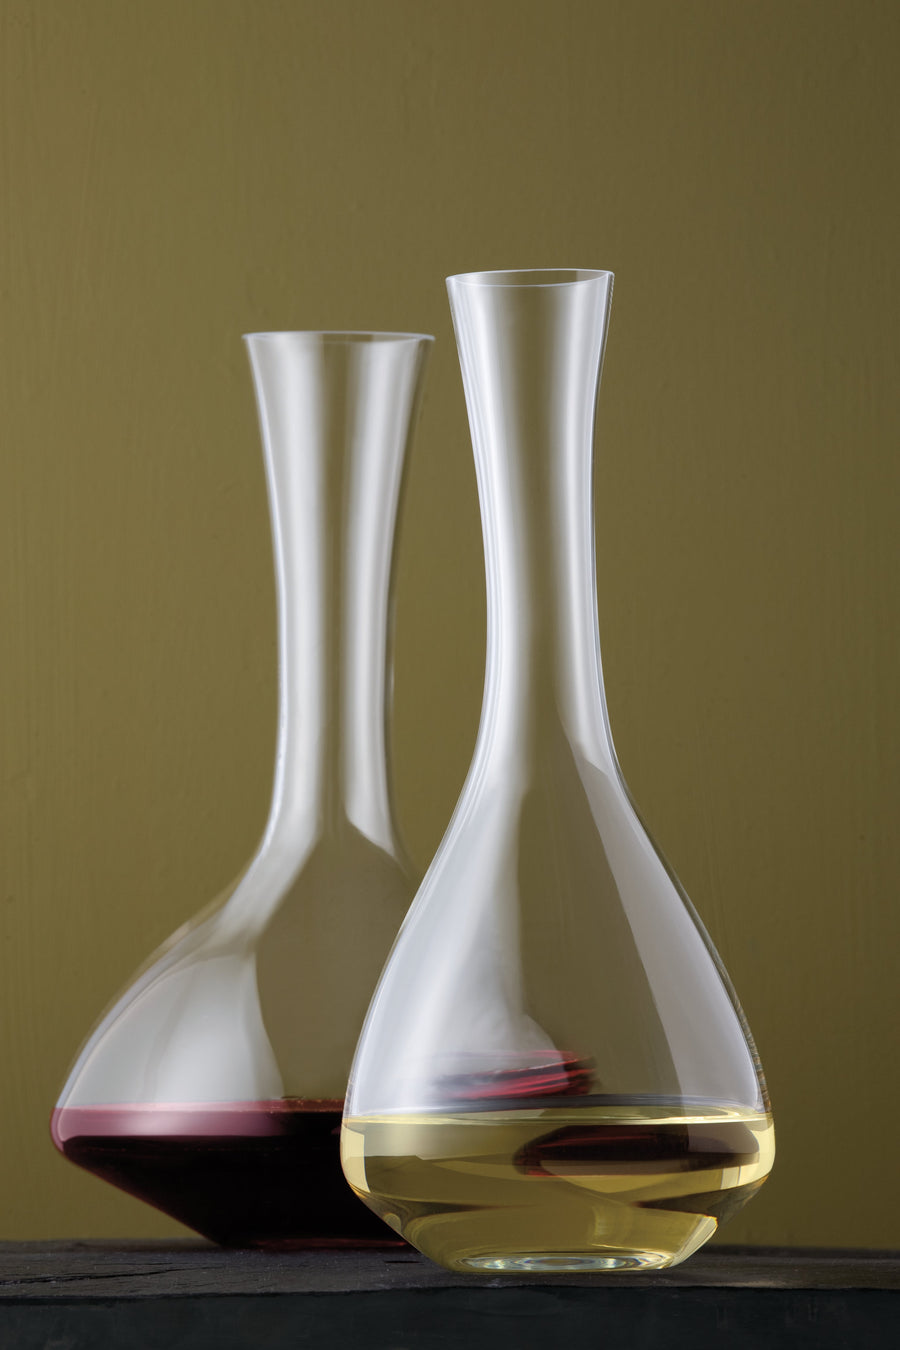 ZWIESEL GLAS | Alloro Magnum Decanter Handmade